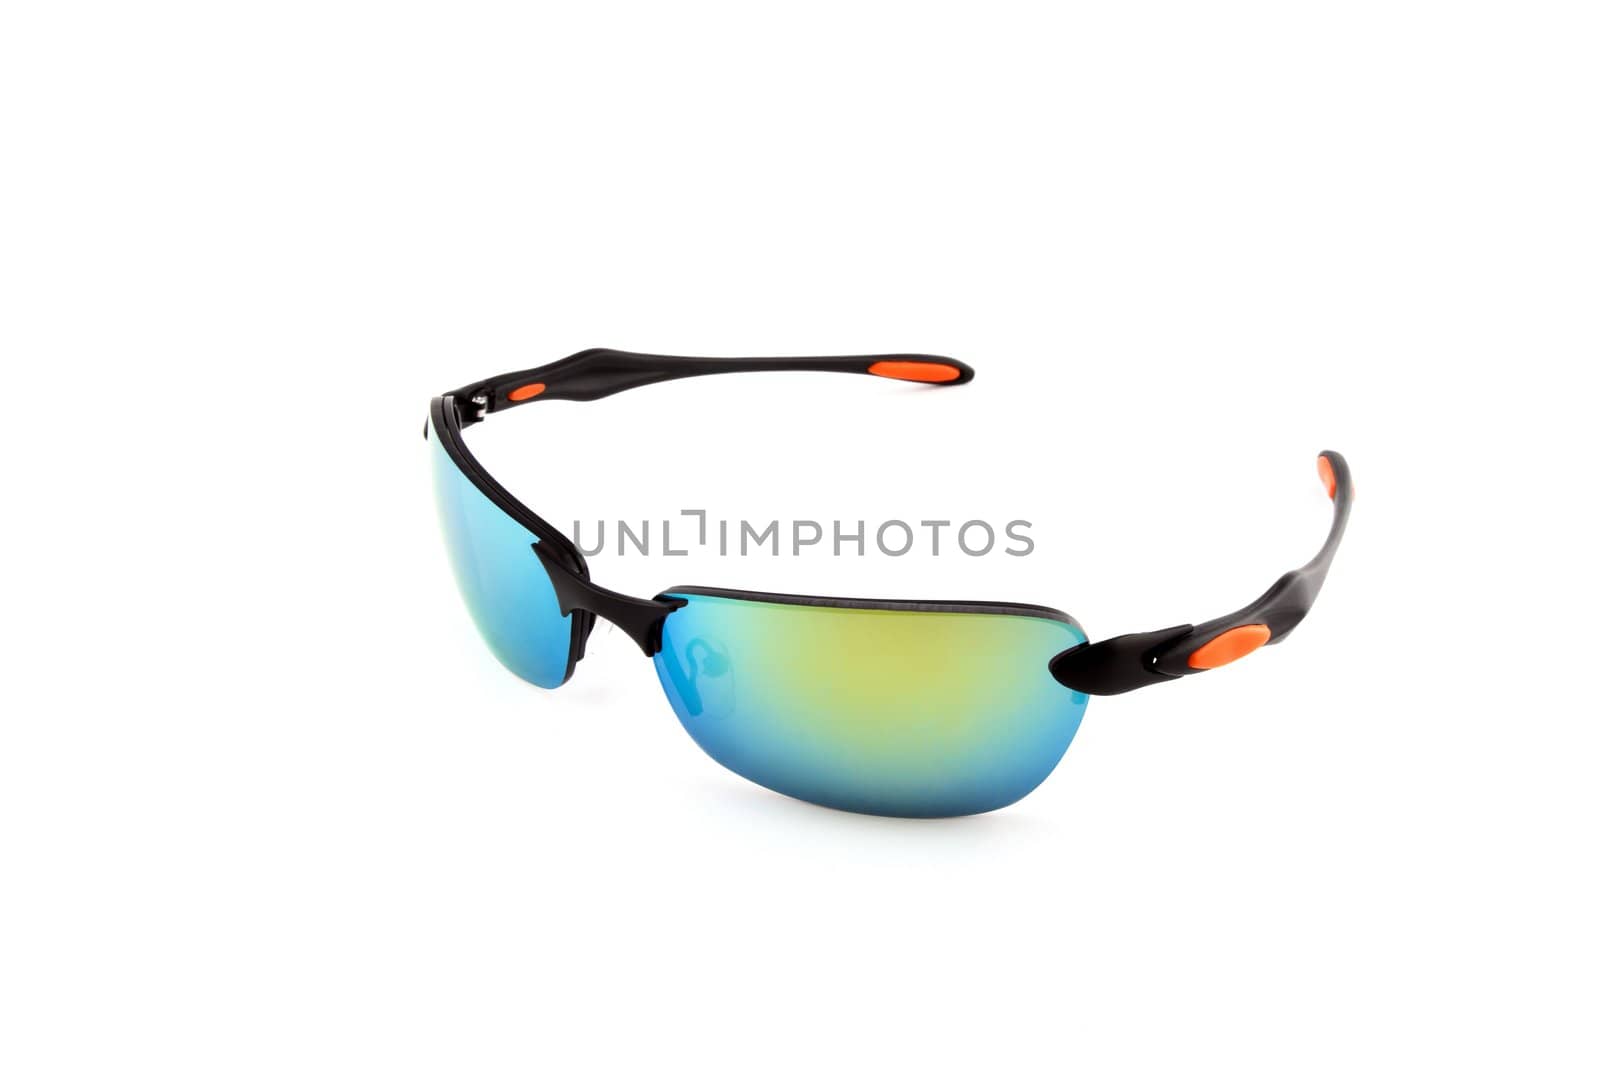 Colorful stylish sunglasses isolated on white background.